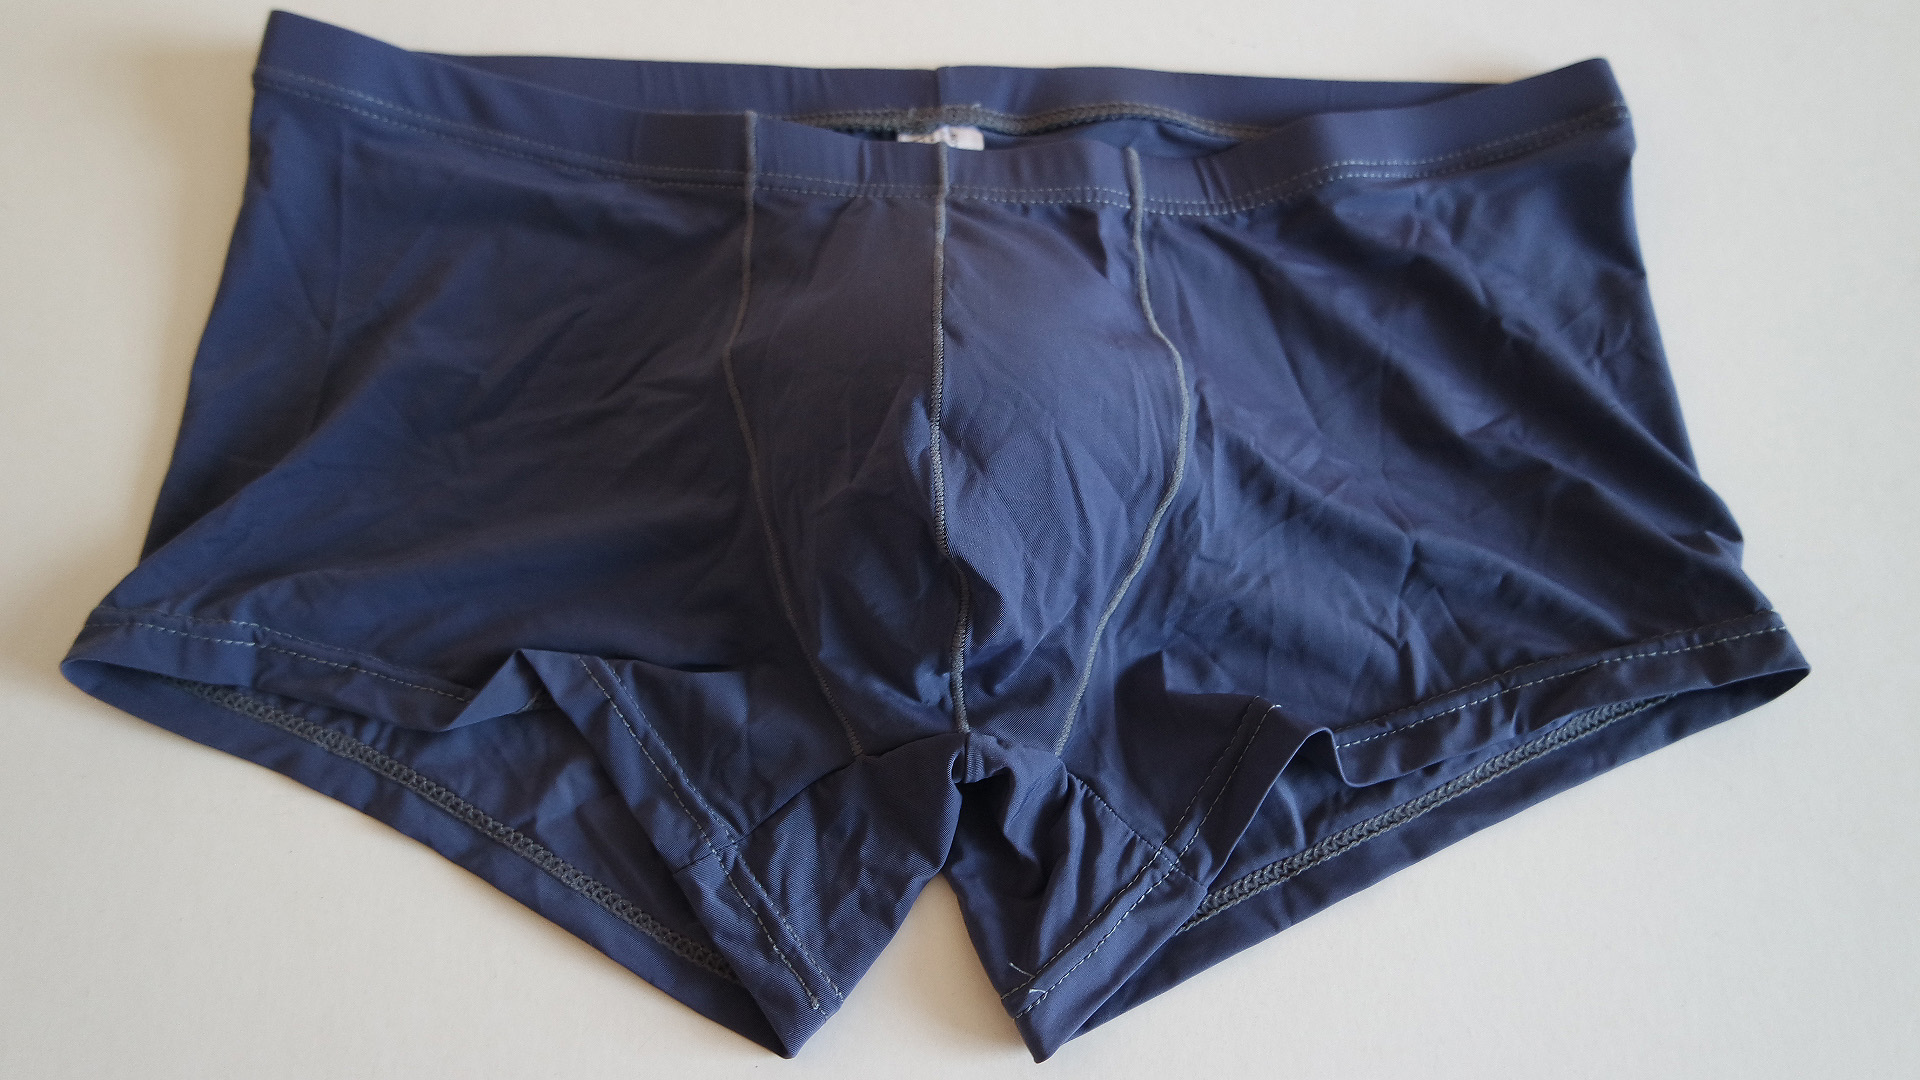 Underwearset-Underwear for sale-Offers